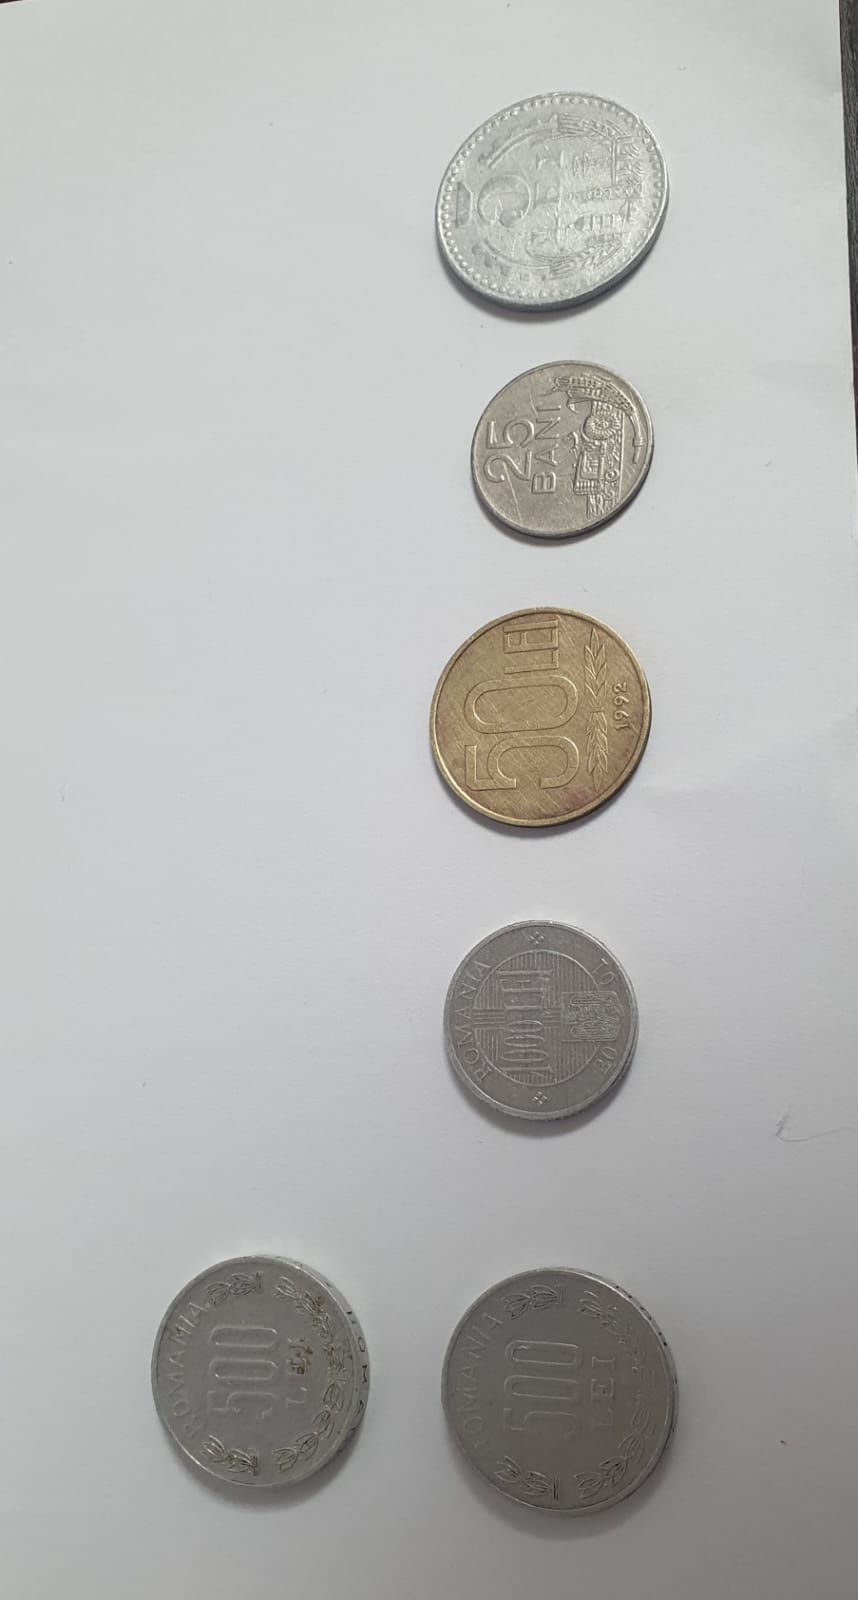 Colecție de bani vechi românești.